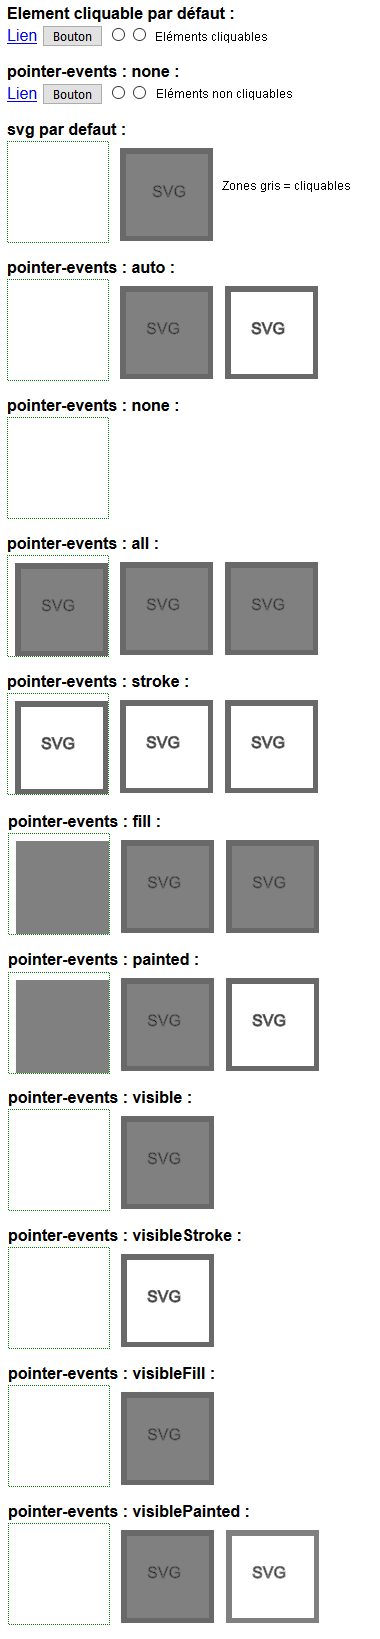 copie d'écran de l'affichage de la propriété CSS pointer-events